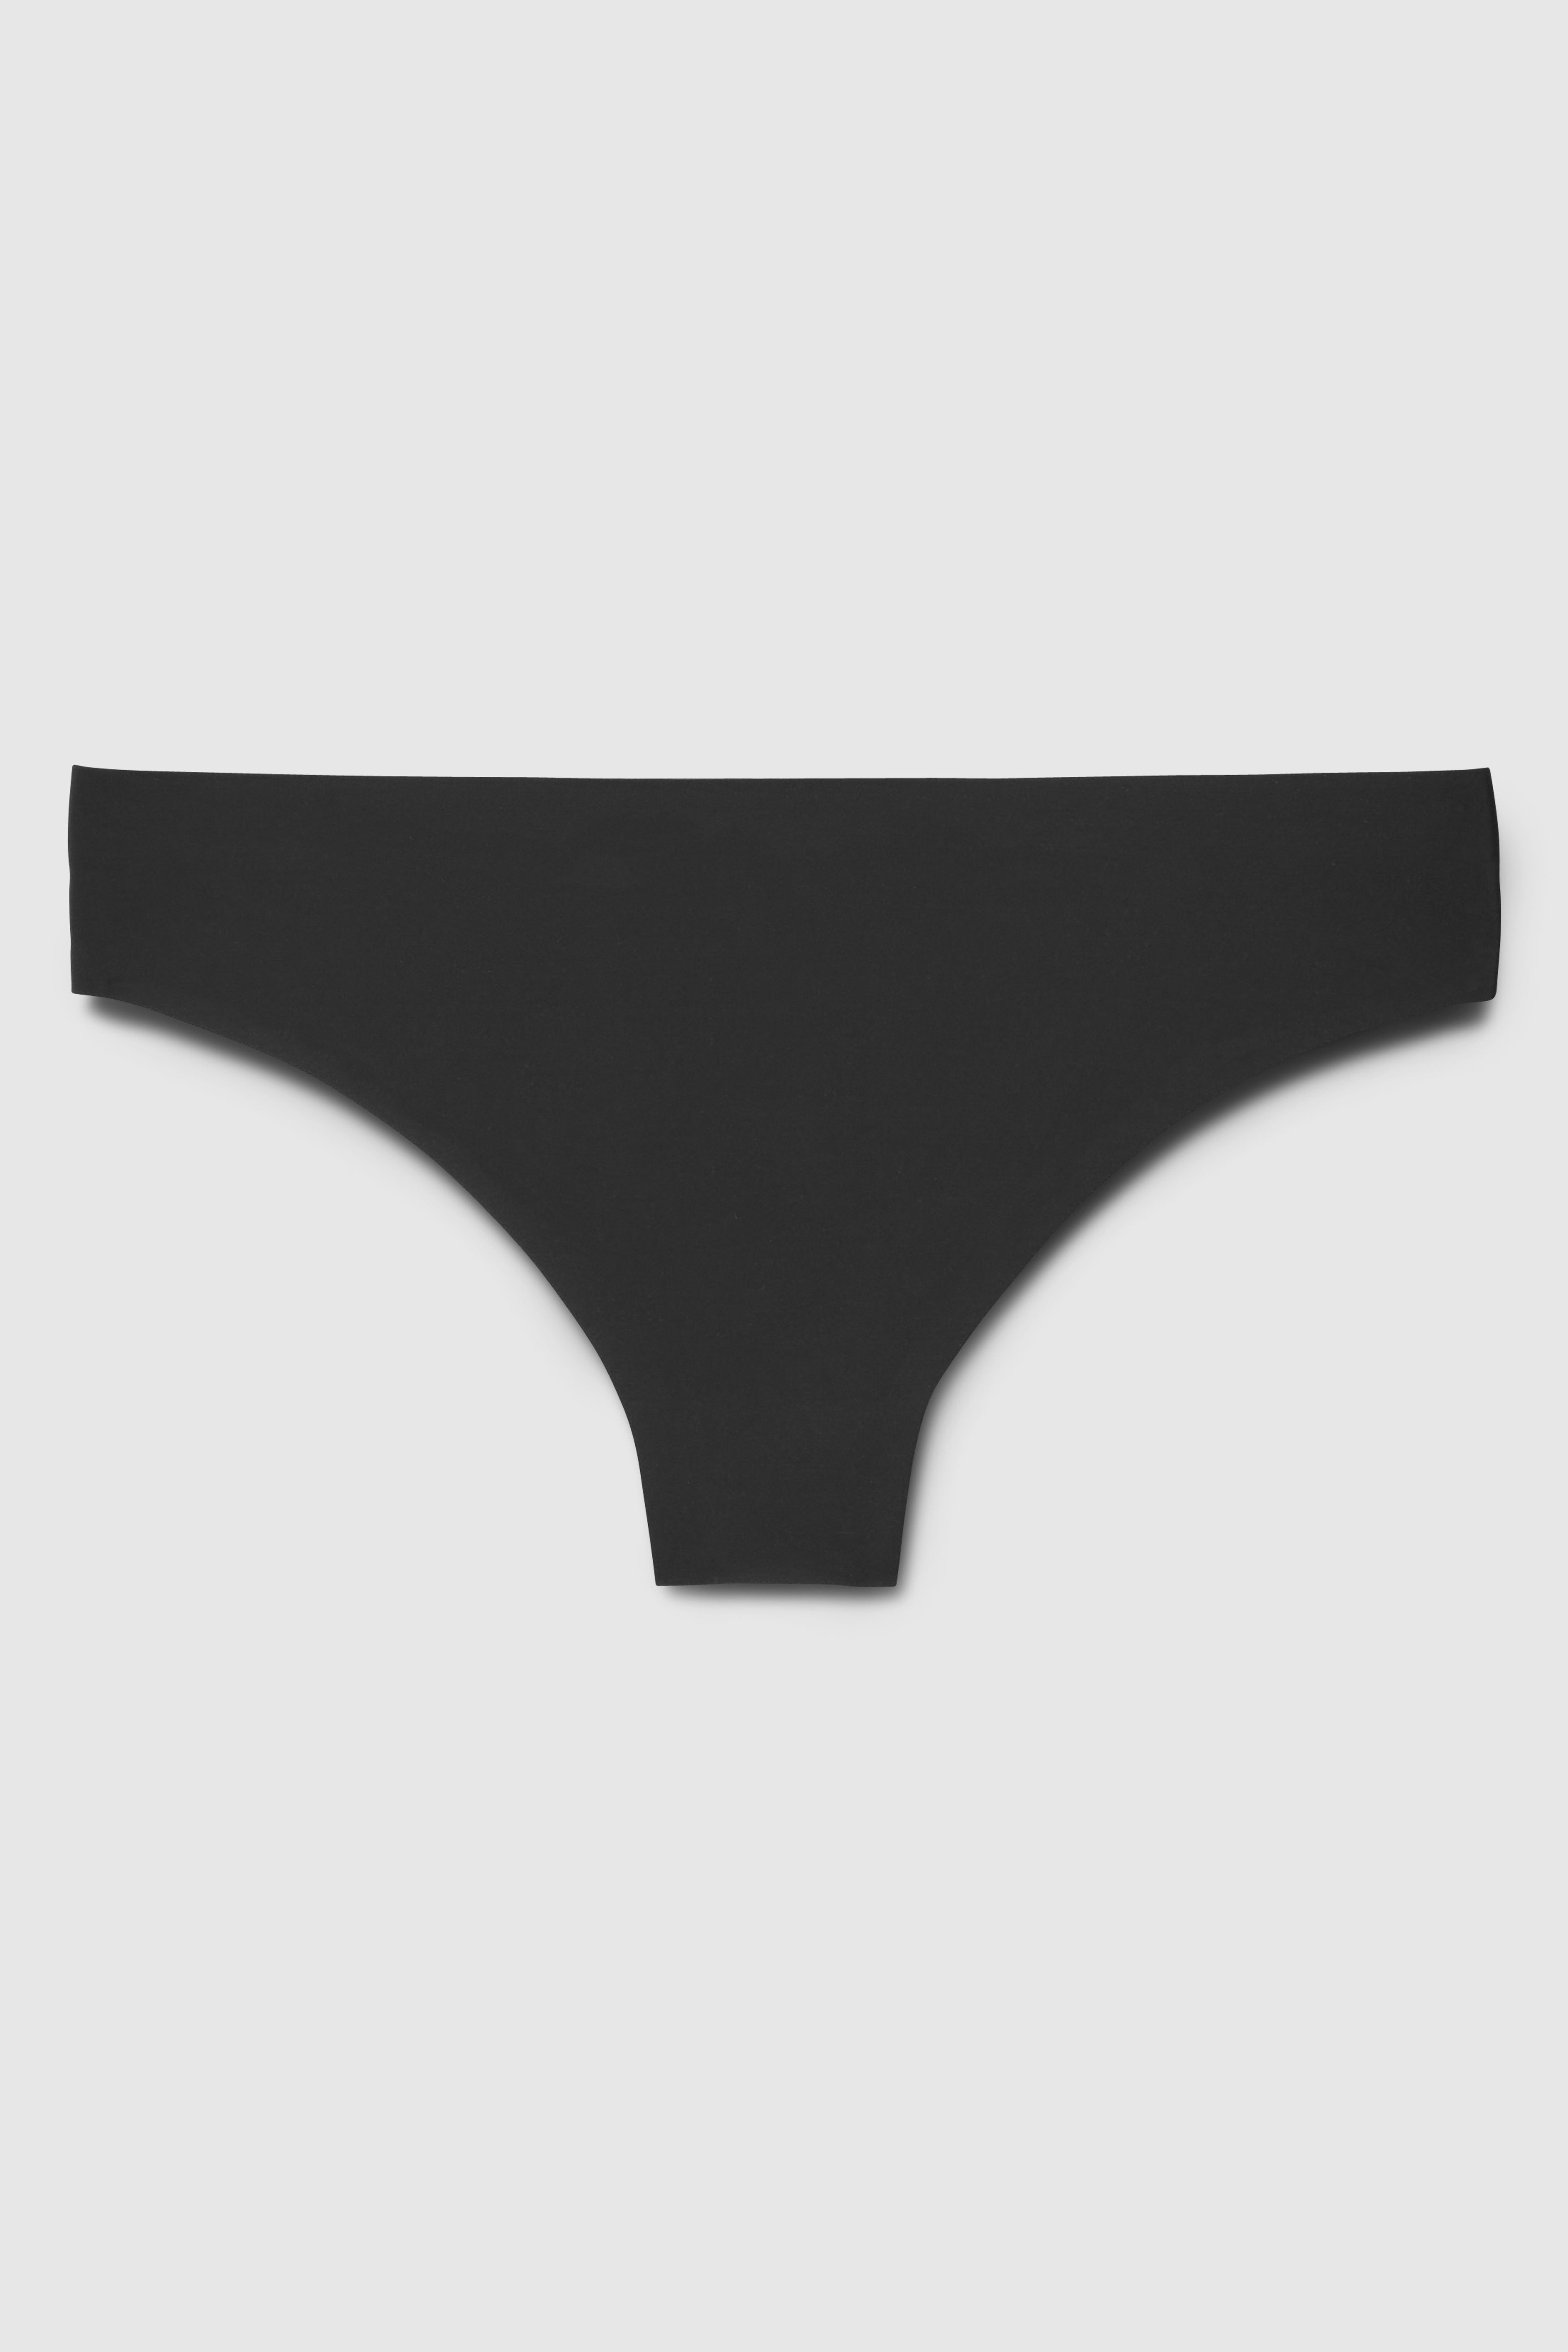 Women's Black Thong Panties